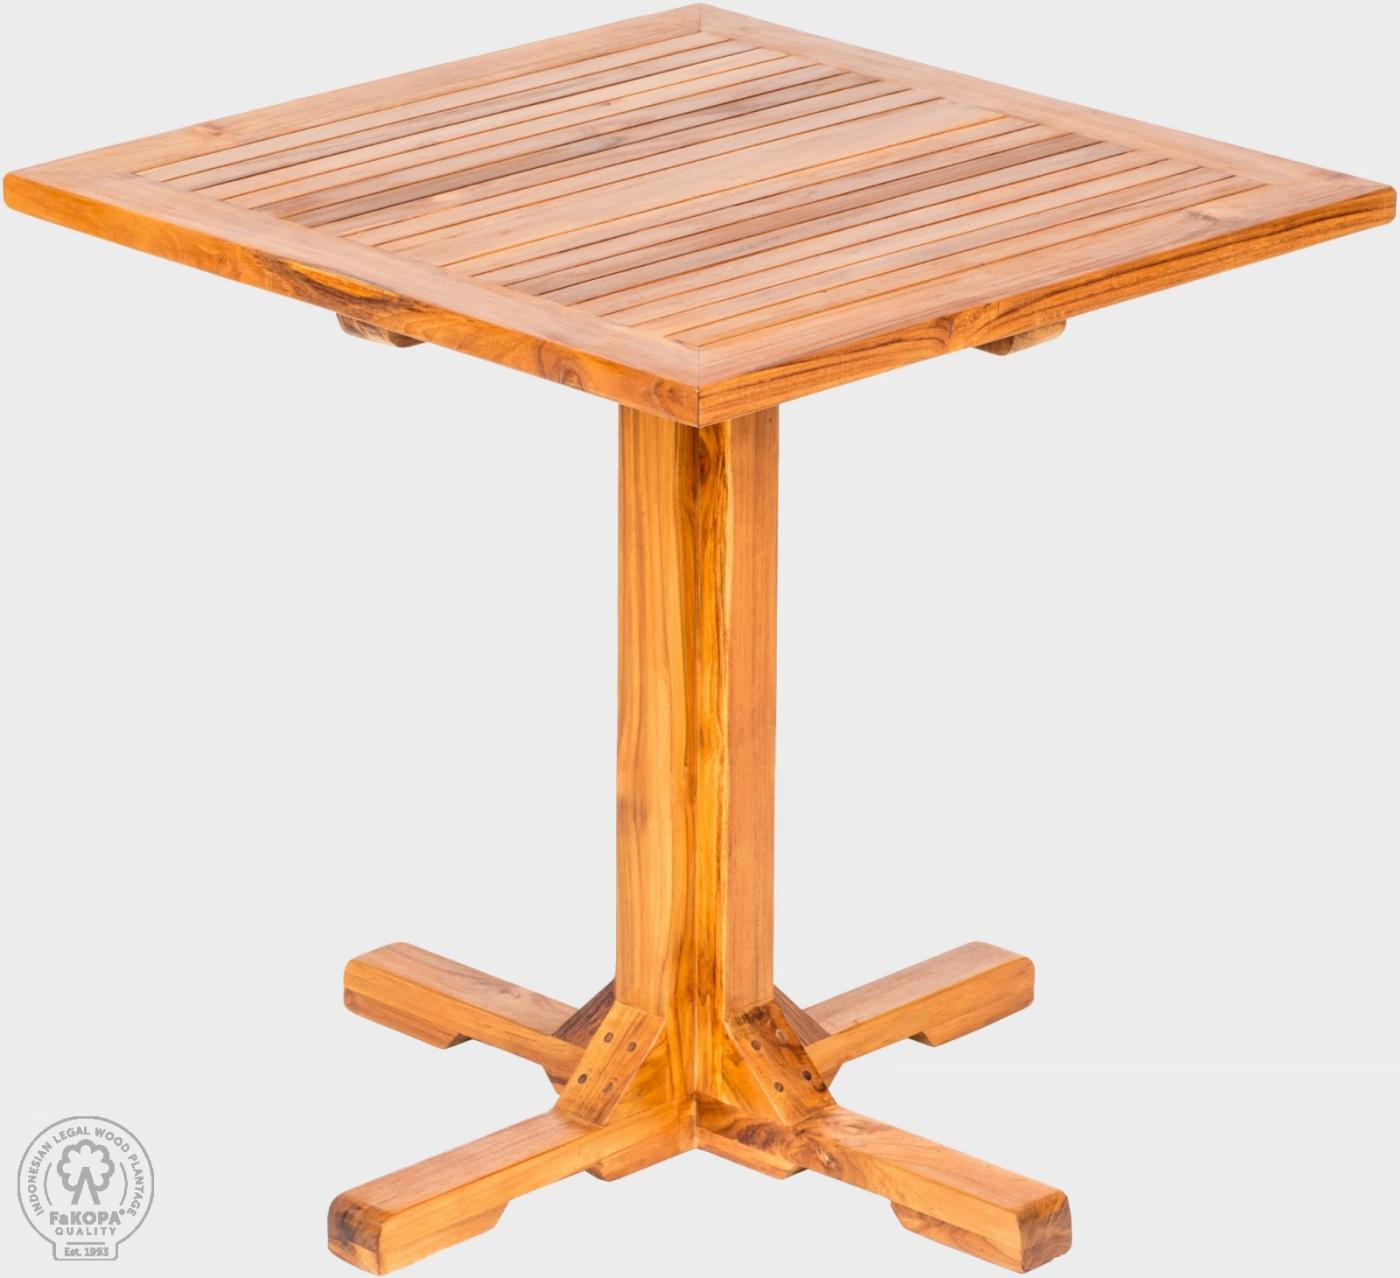 Teakový stôl DANTE 75 x 75 cm krížová noha, prírodný